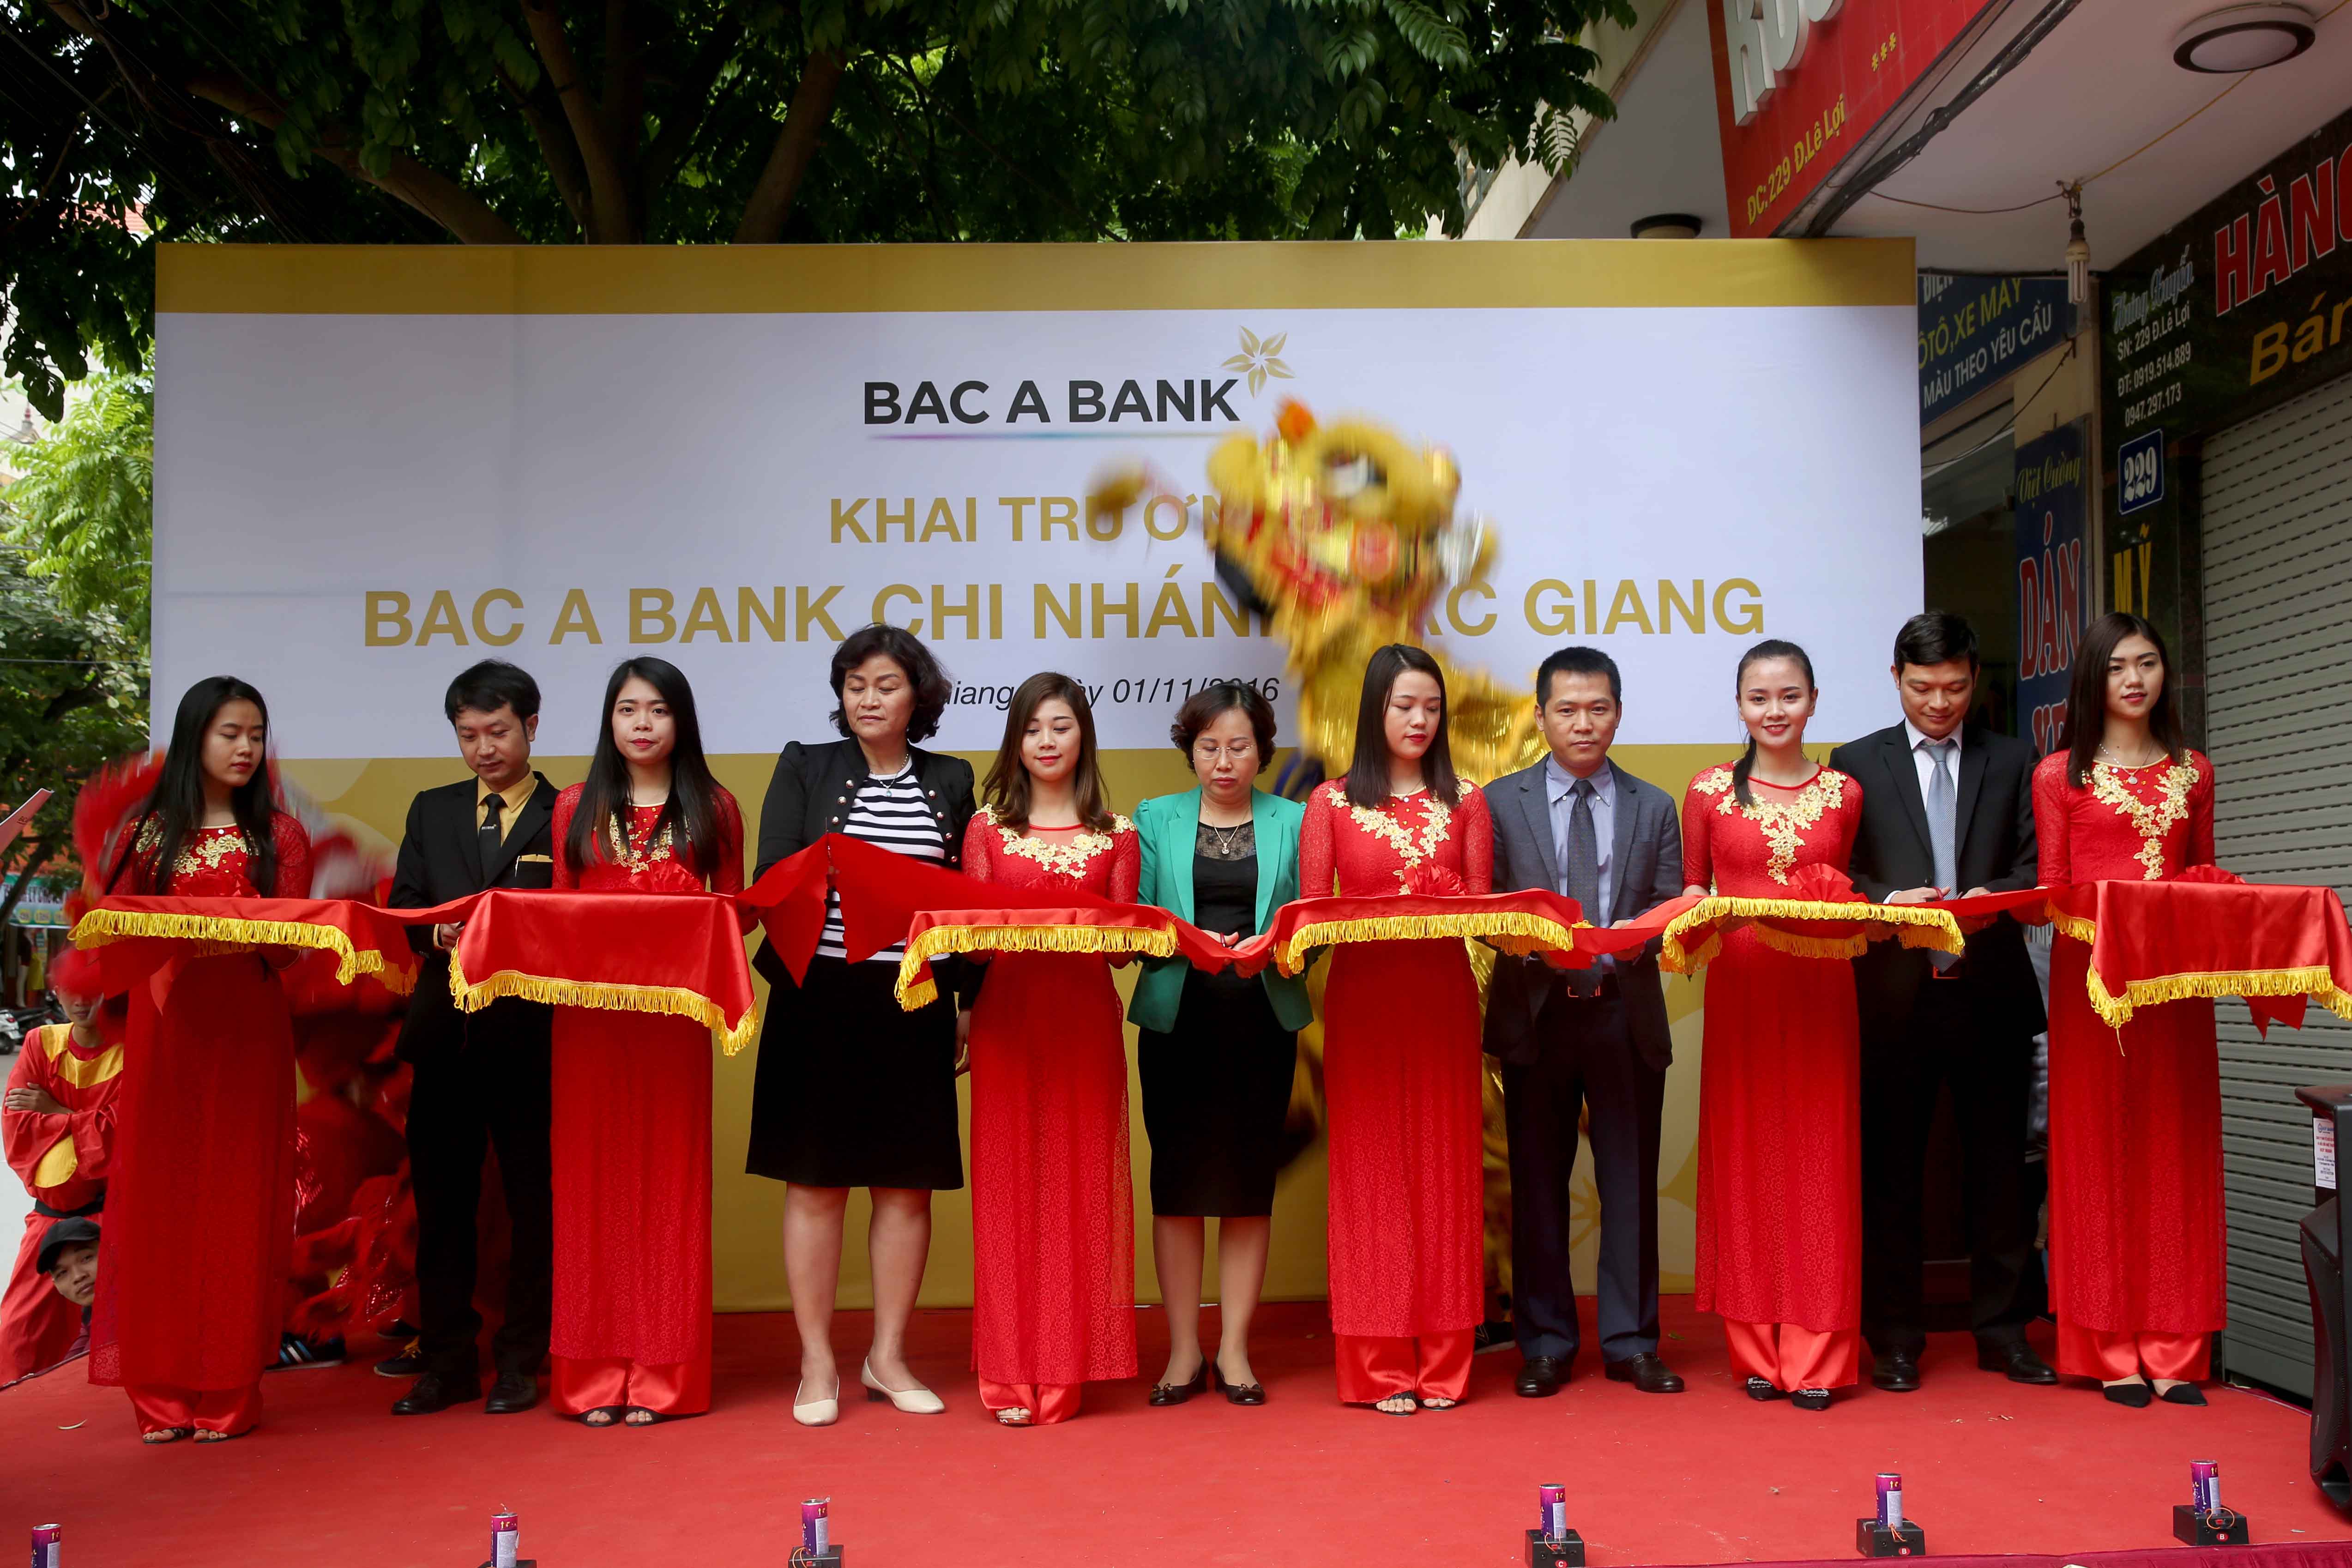 Đại diện UBND tỉnh Bắc Giang, Ngân hàng Nhà nước, Ban điều hành BAC A BANK cùng lãnh đạo chi nhánh cắt băng khai trương chi nhánh Bắc Giang.